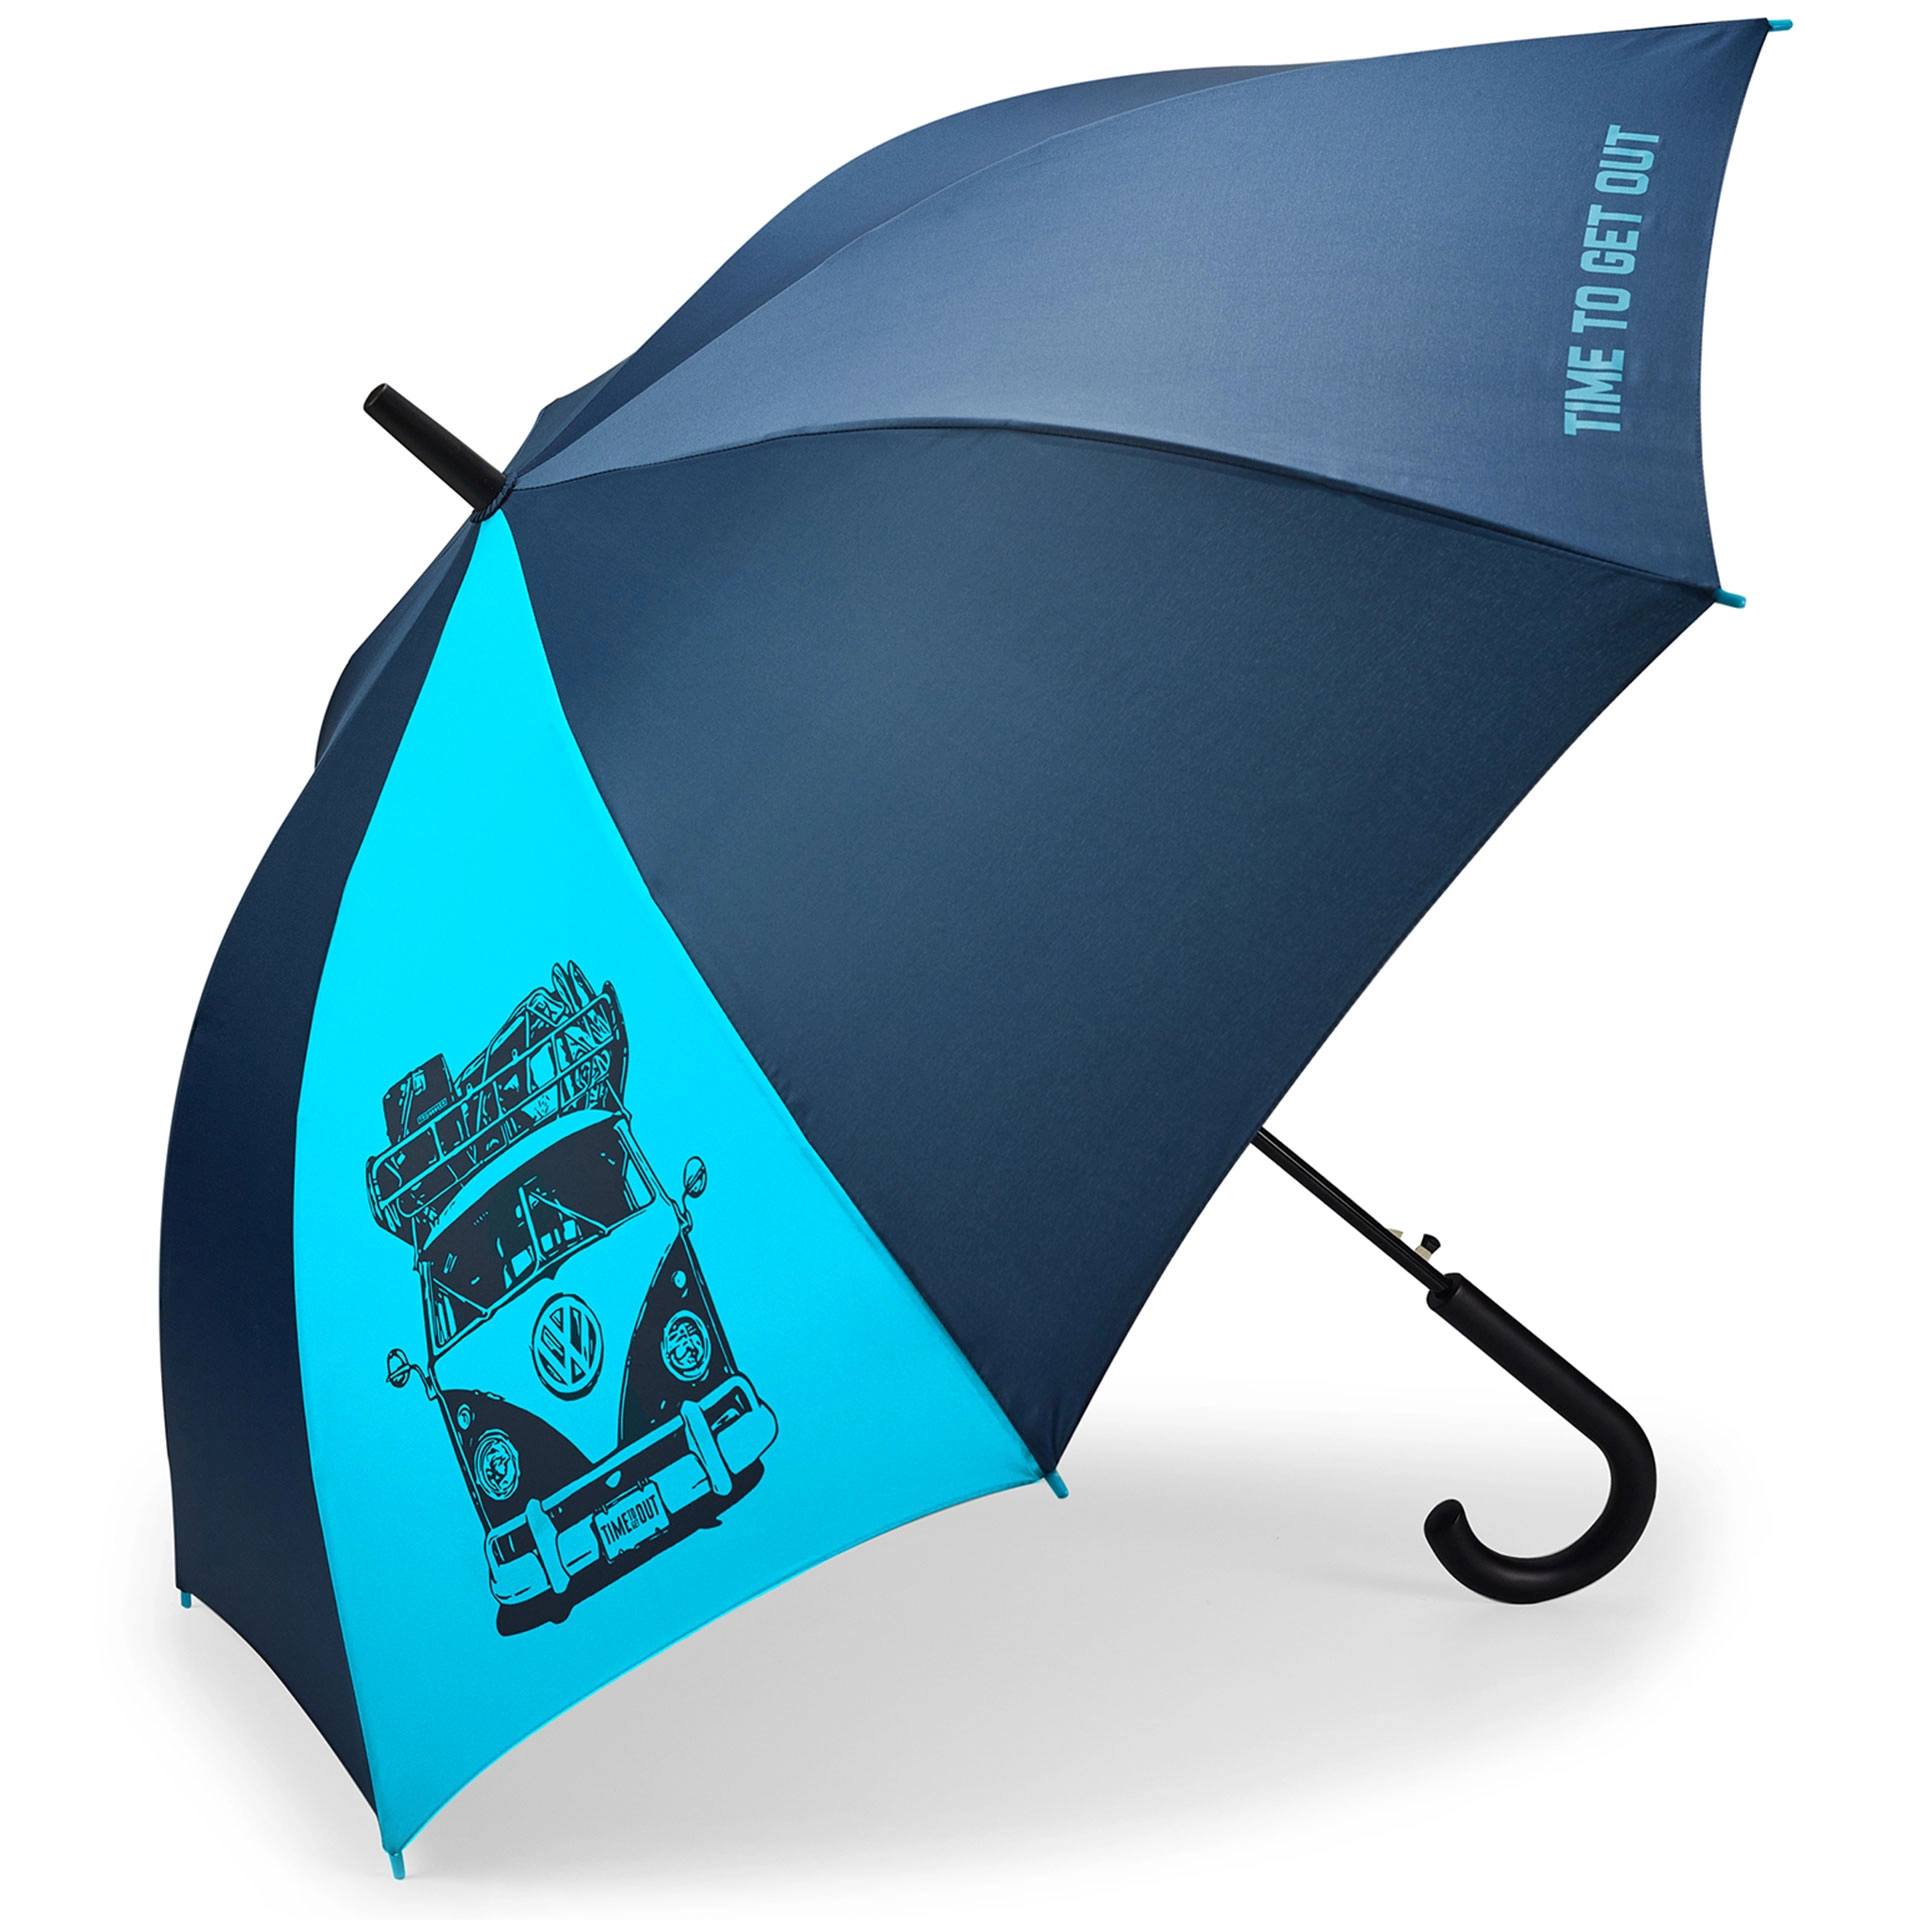 Regenschirm t1 volkswagen rosier onlineshop